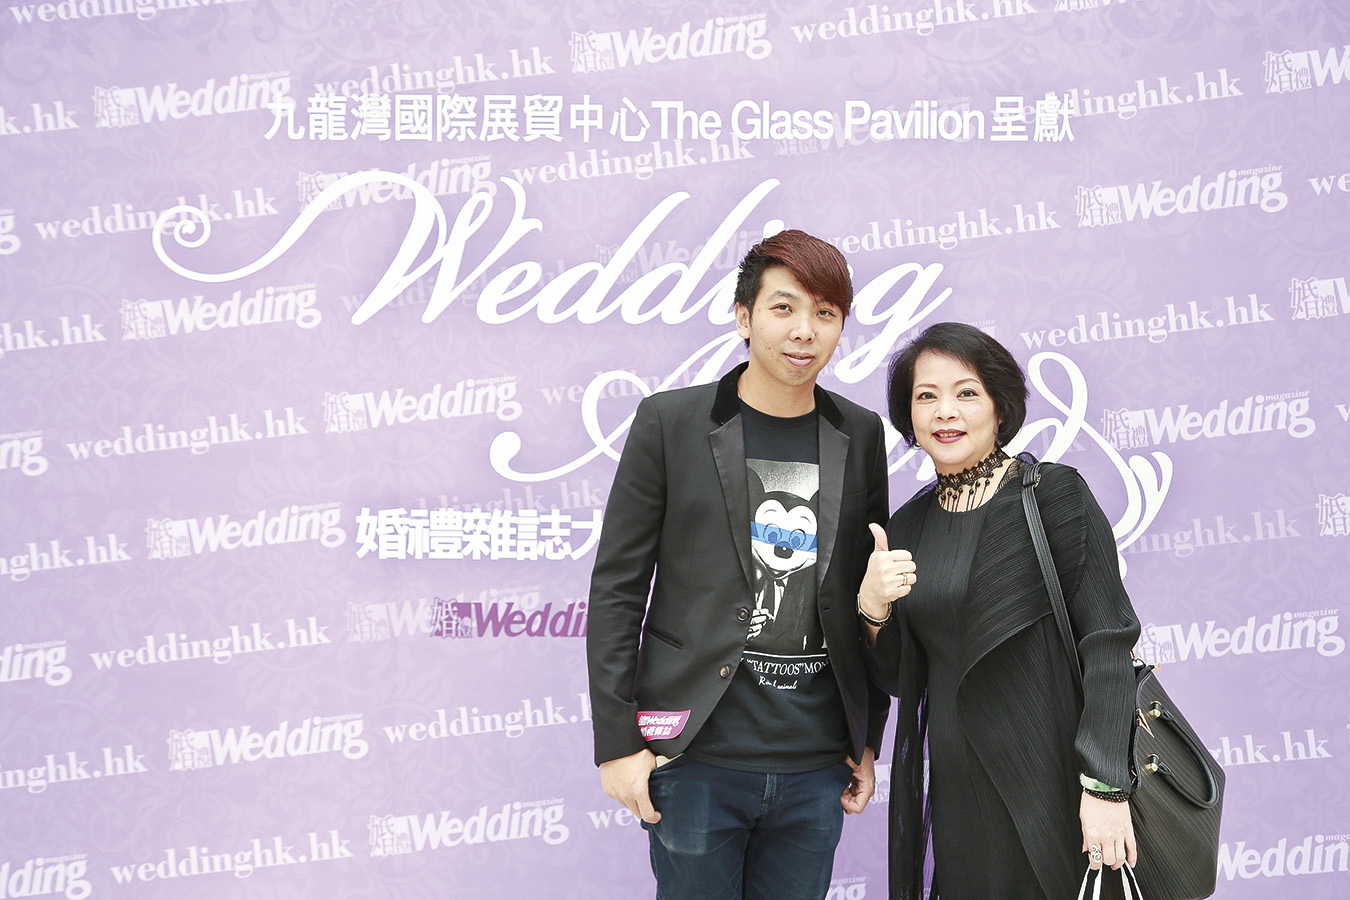 薇薇新娘VIVI Bride的香港店長劉寶銓小姐與婚禮雜誌的Ivan合照留念